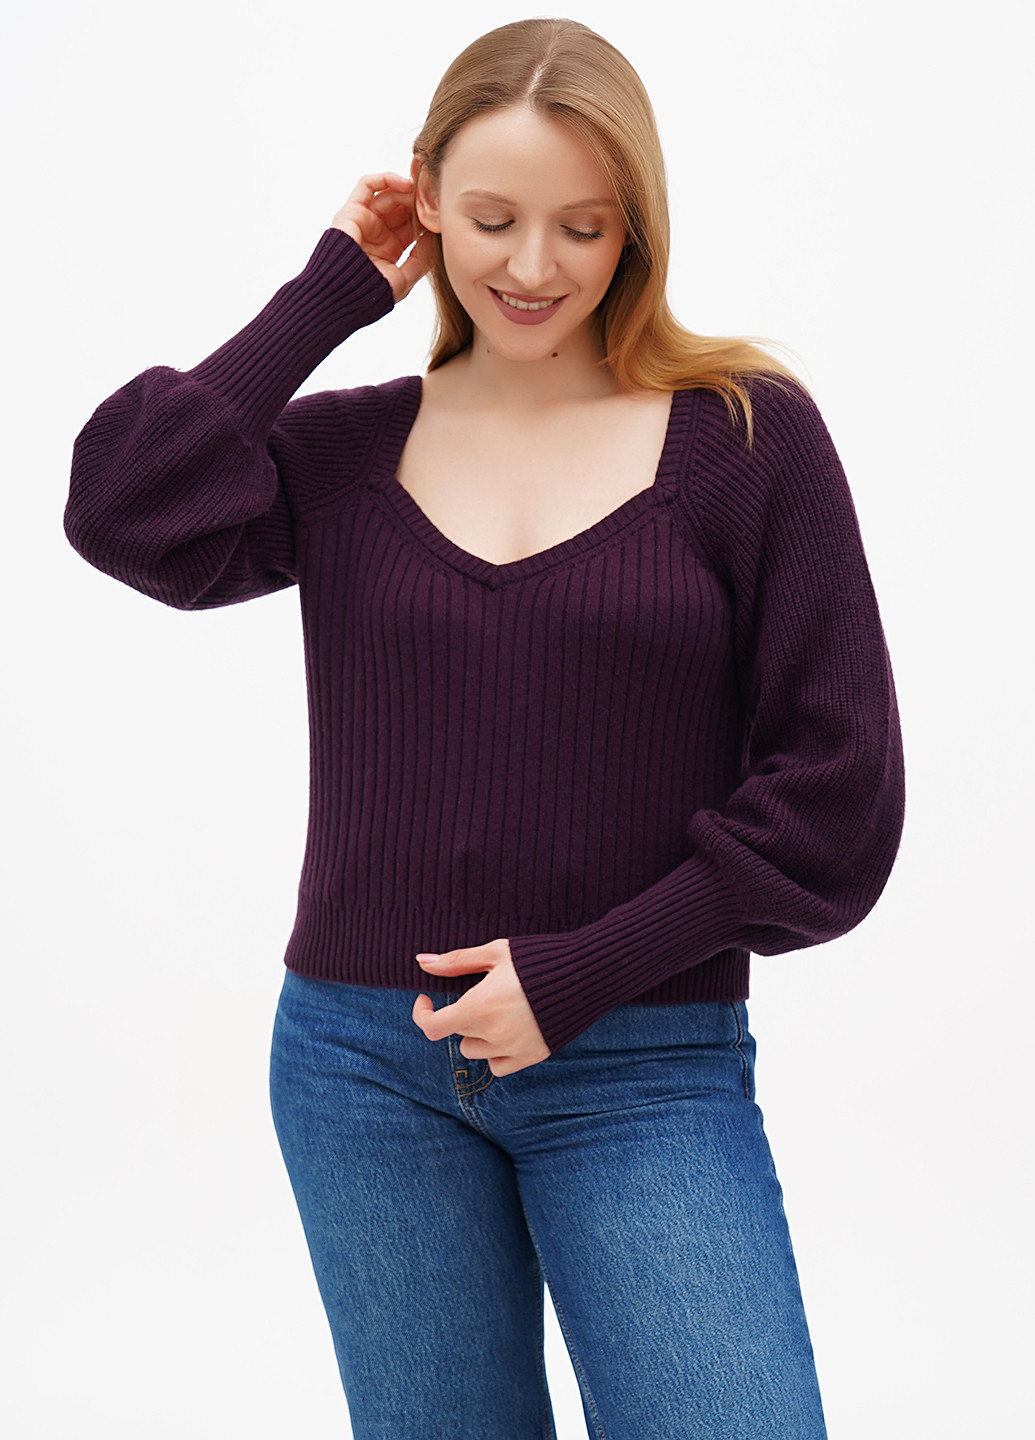 Сливовый демисезонный пуловер пуловер Boden